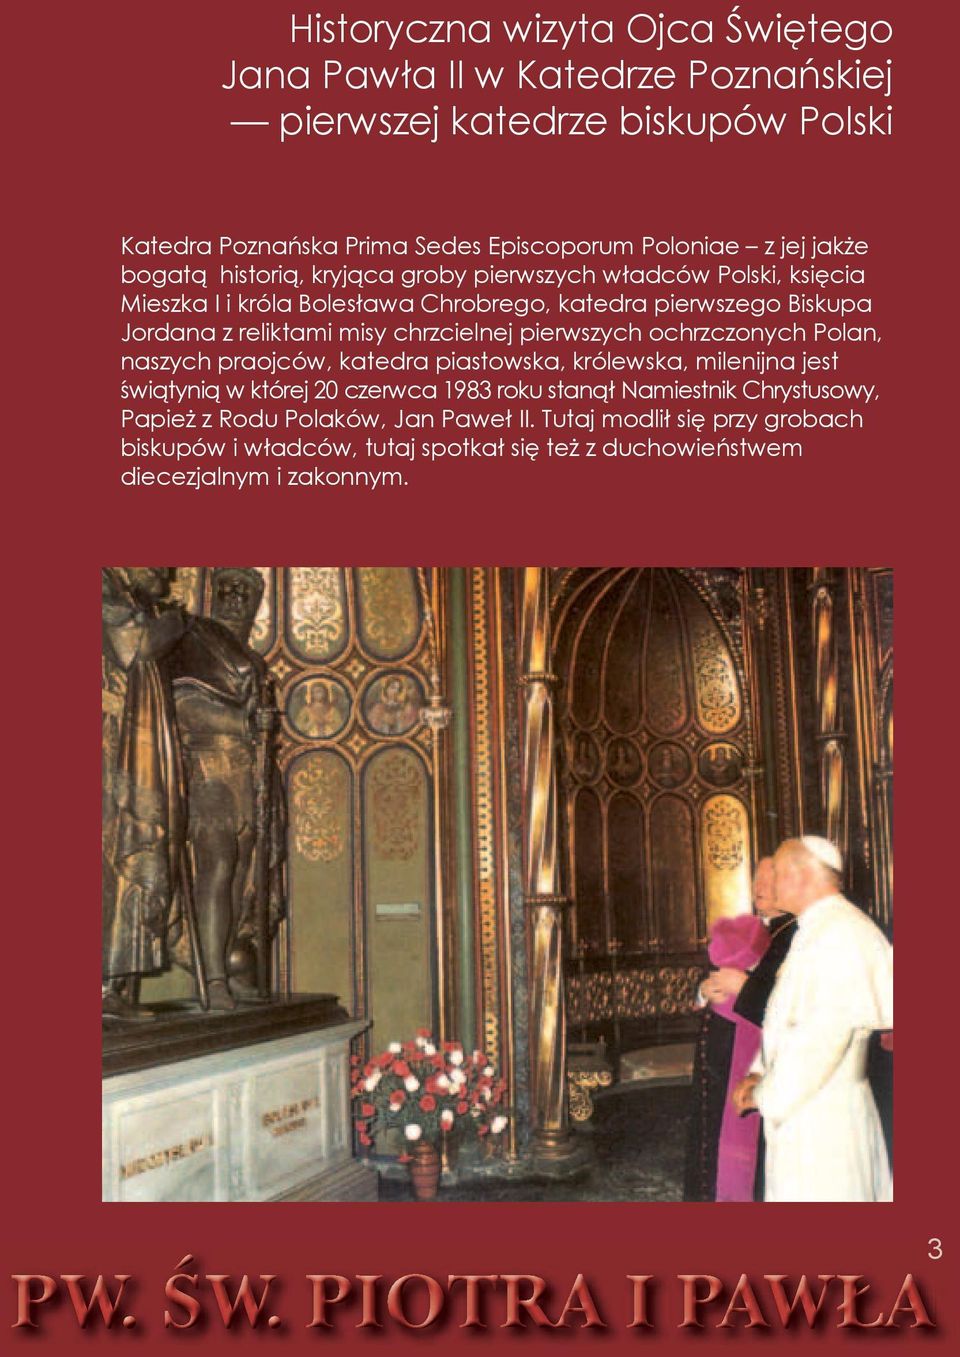 pierwszych ochrzczonych Polan, naszych praojców, katedra piastowska, królewska, milenijna jest świątynią w której 20 czerwca 1983 roku stanął Namiestnik Chrystusowy,